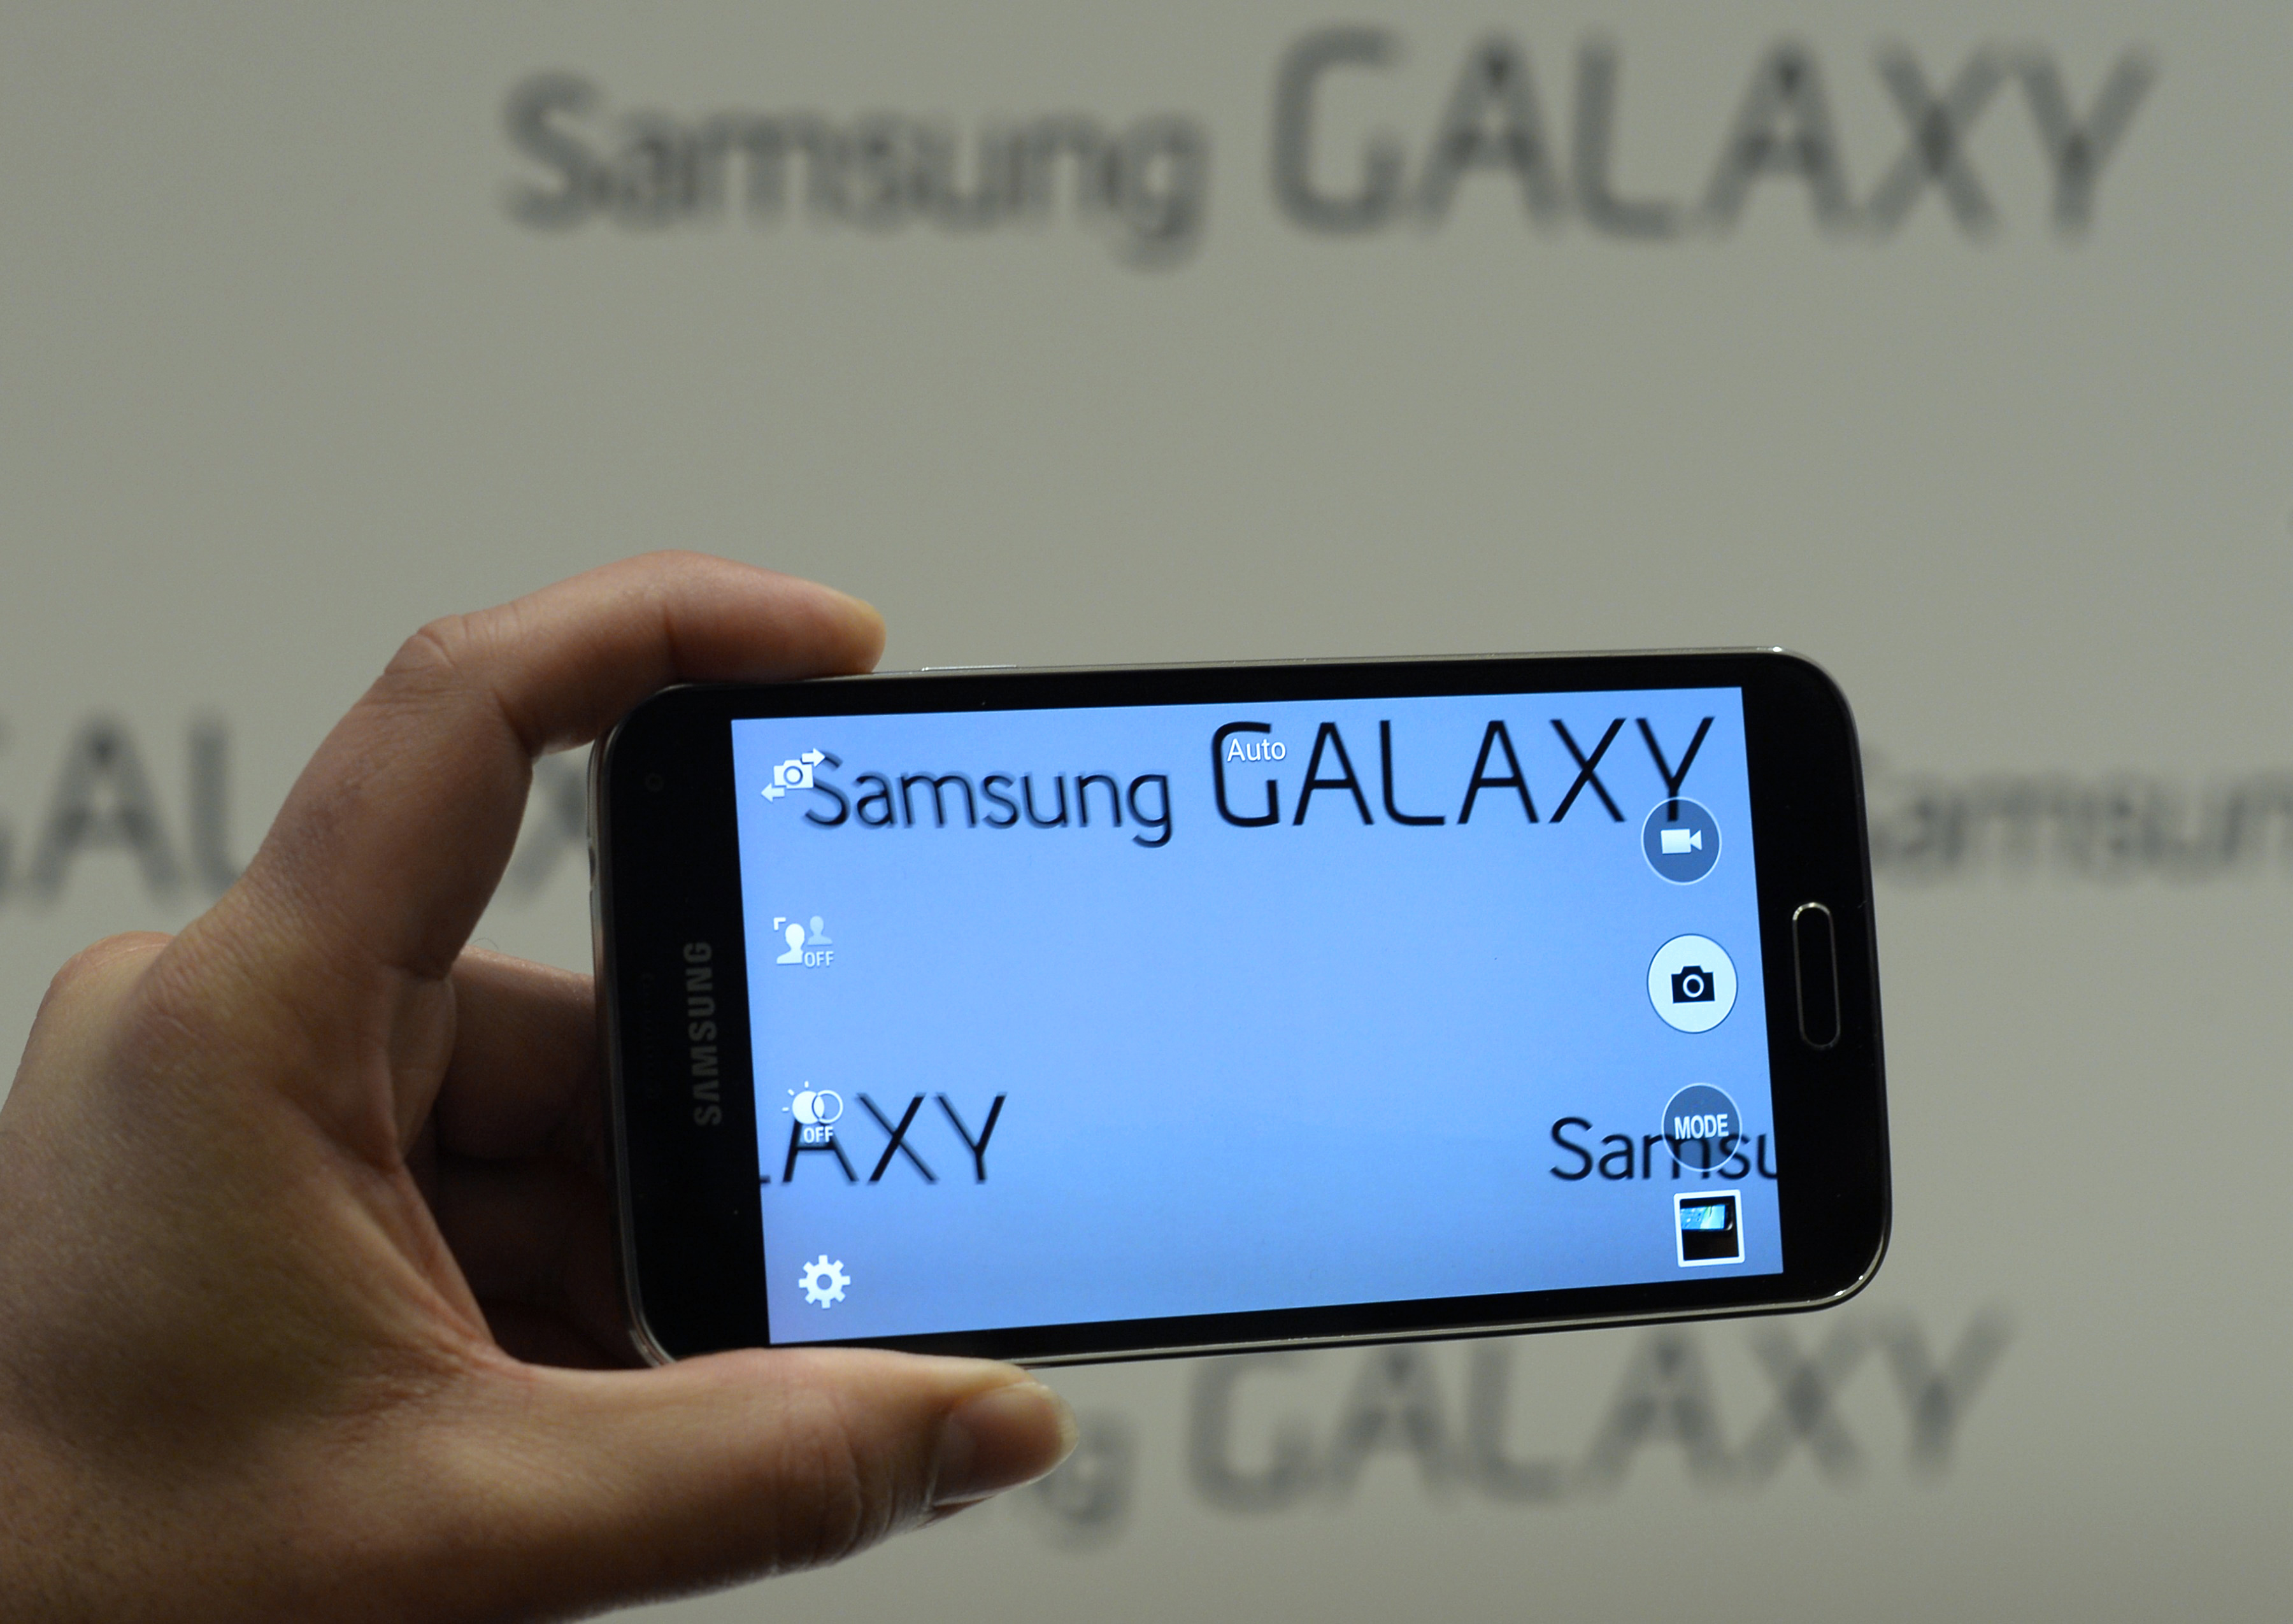 Samsung Android 4.4.4 KitKat-Update erreicht Galaxy S5 mit VoLTE; Galaxy S4 und Galaxy Tab 4 erhalten 4.4.2